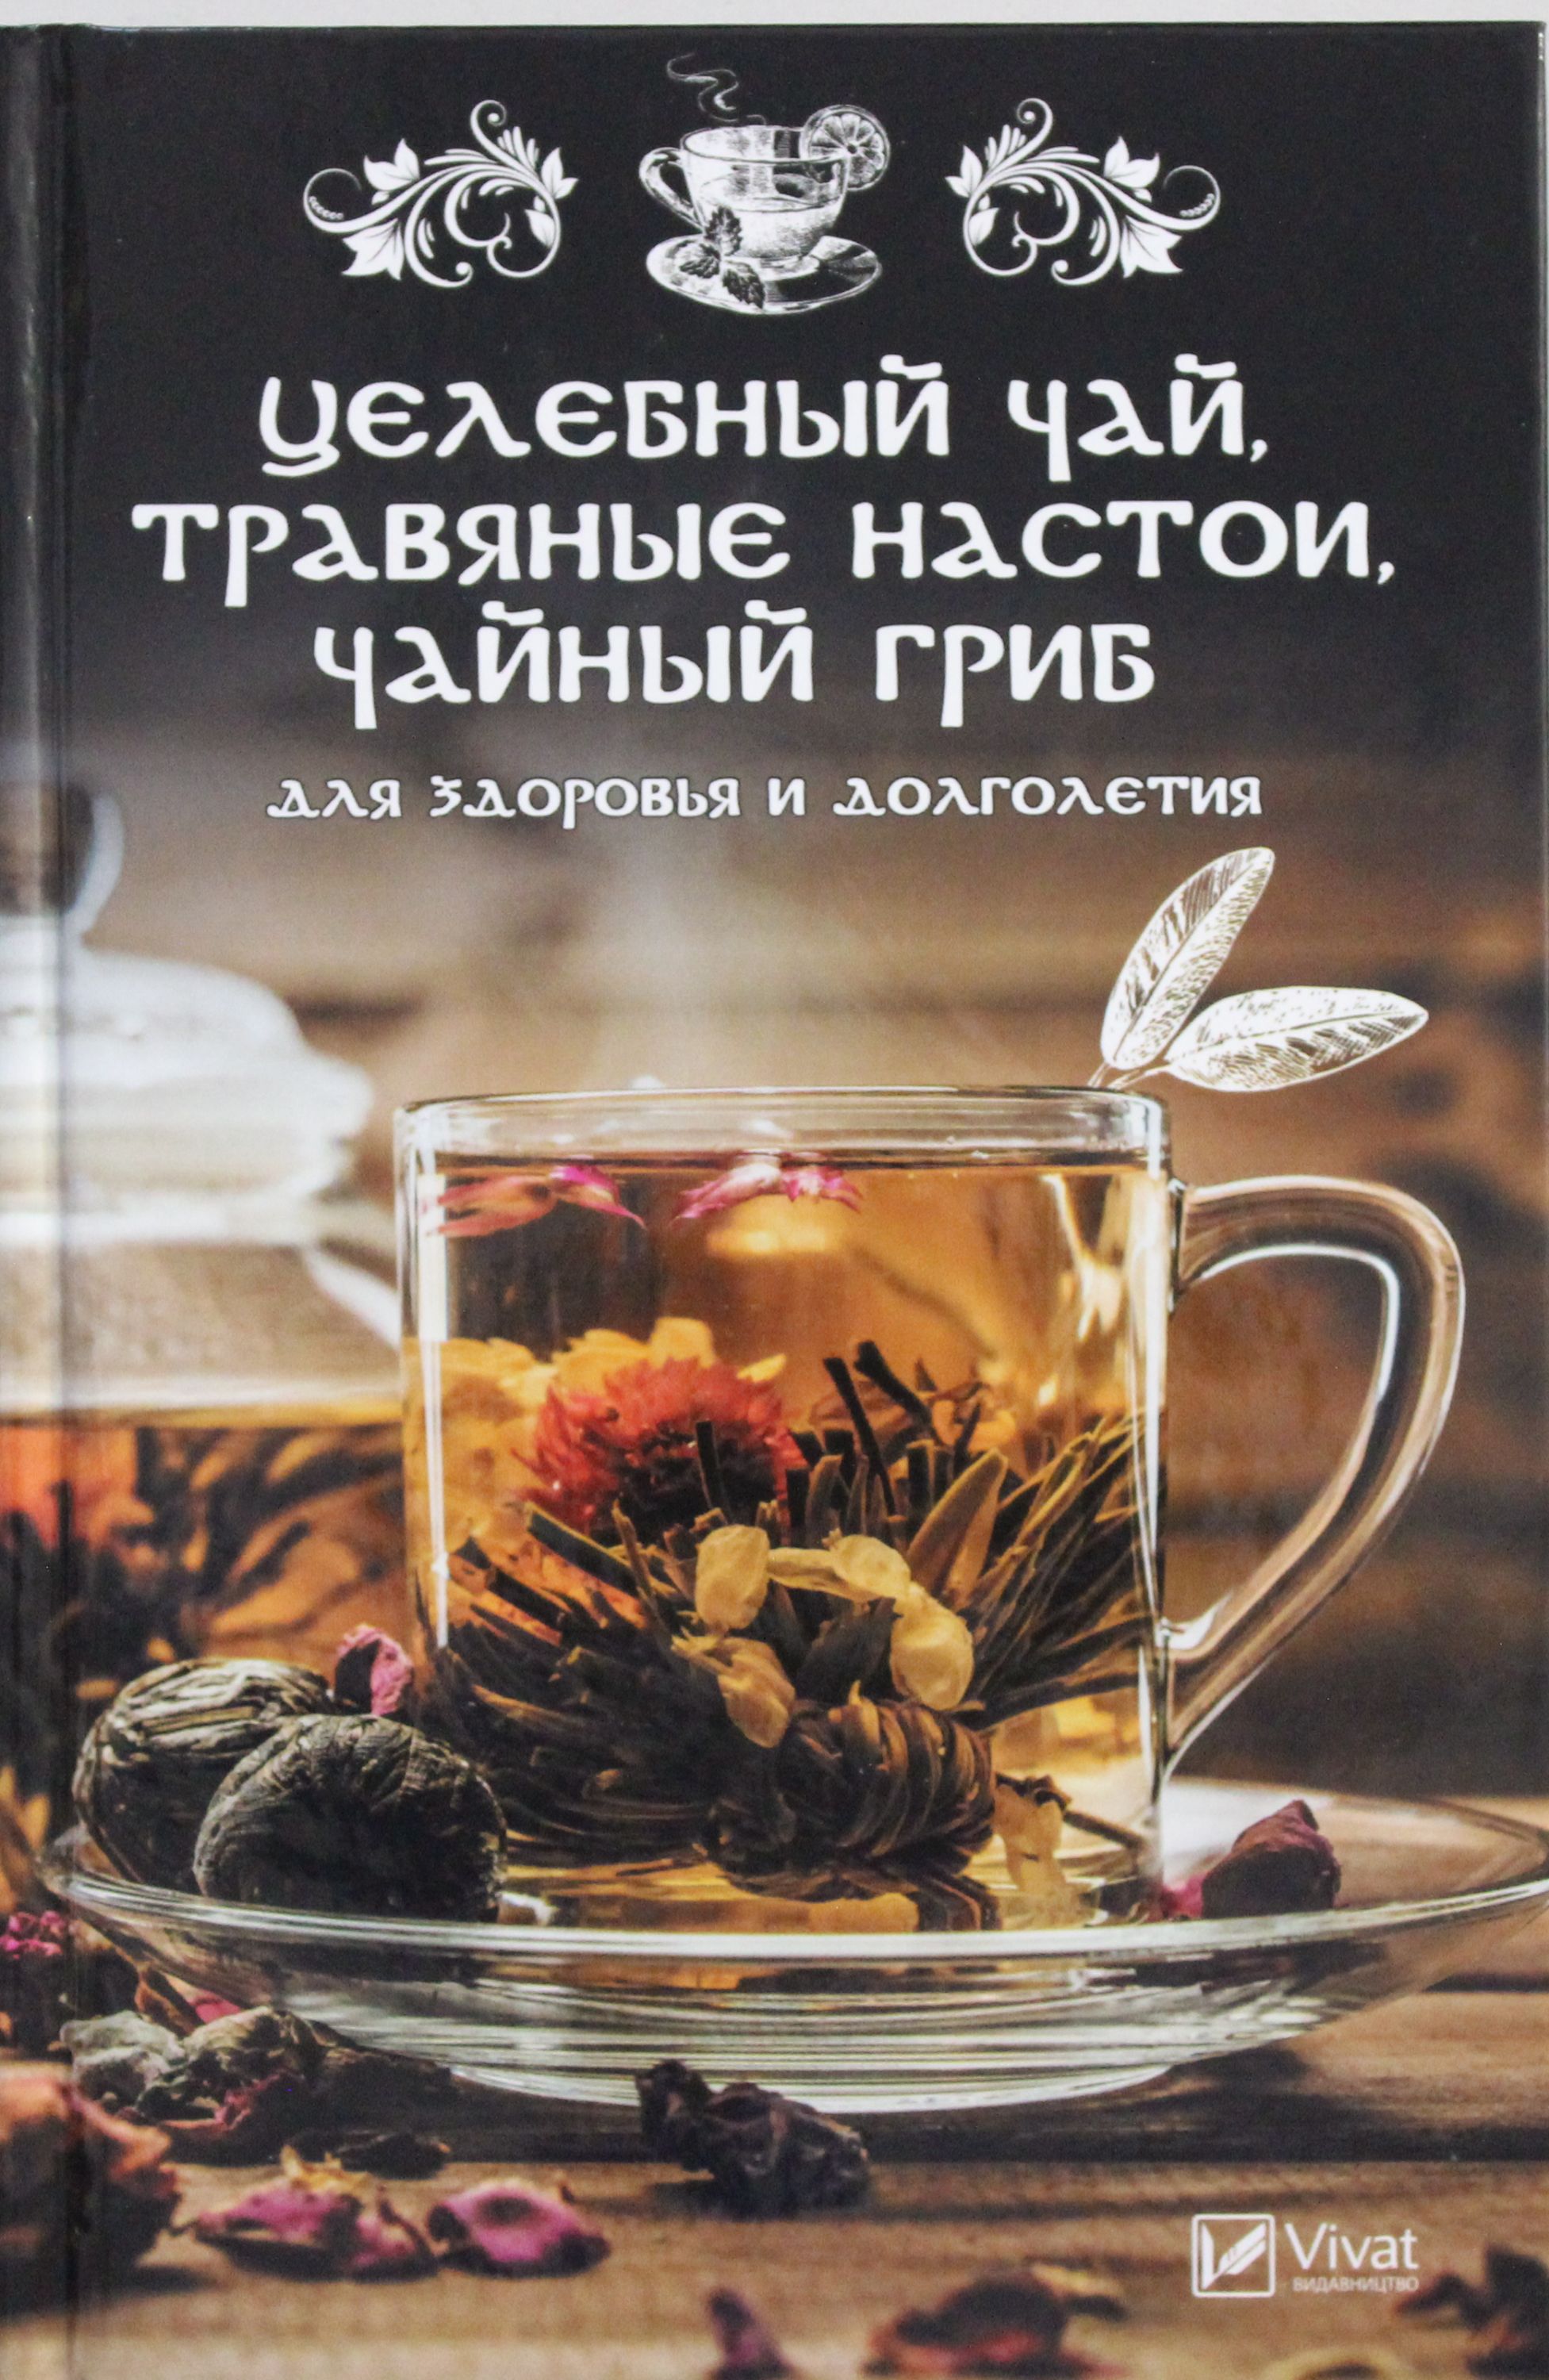 Целебный чай травяные настои чайный гриб для здоровья и долголетия